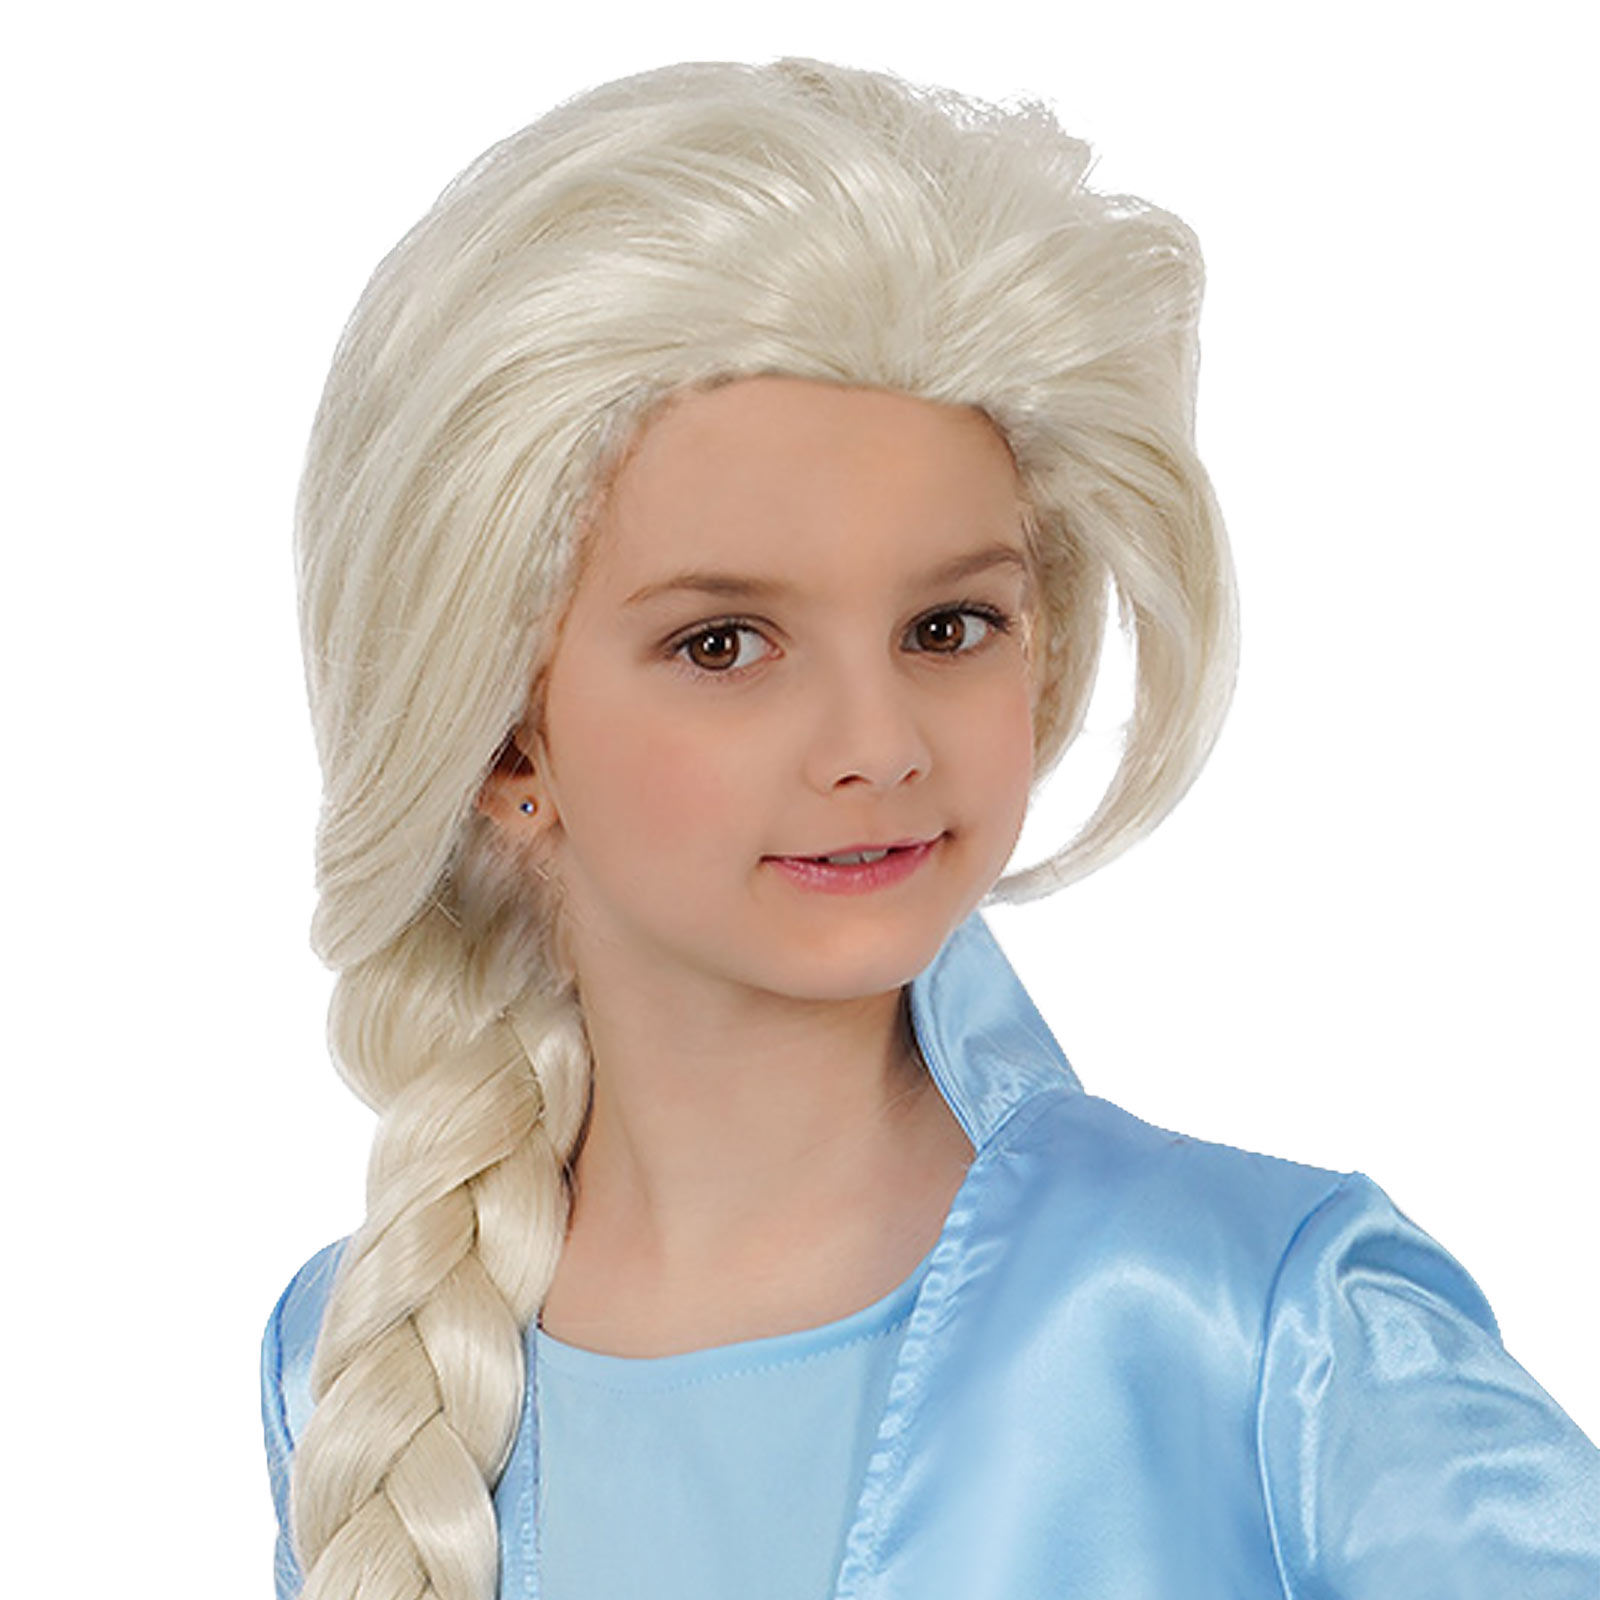 Elsa Kinder Kostüm Perücke für Frozen Fans